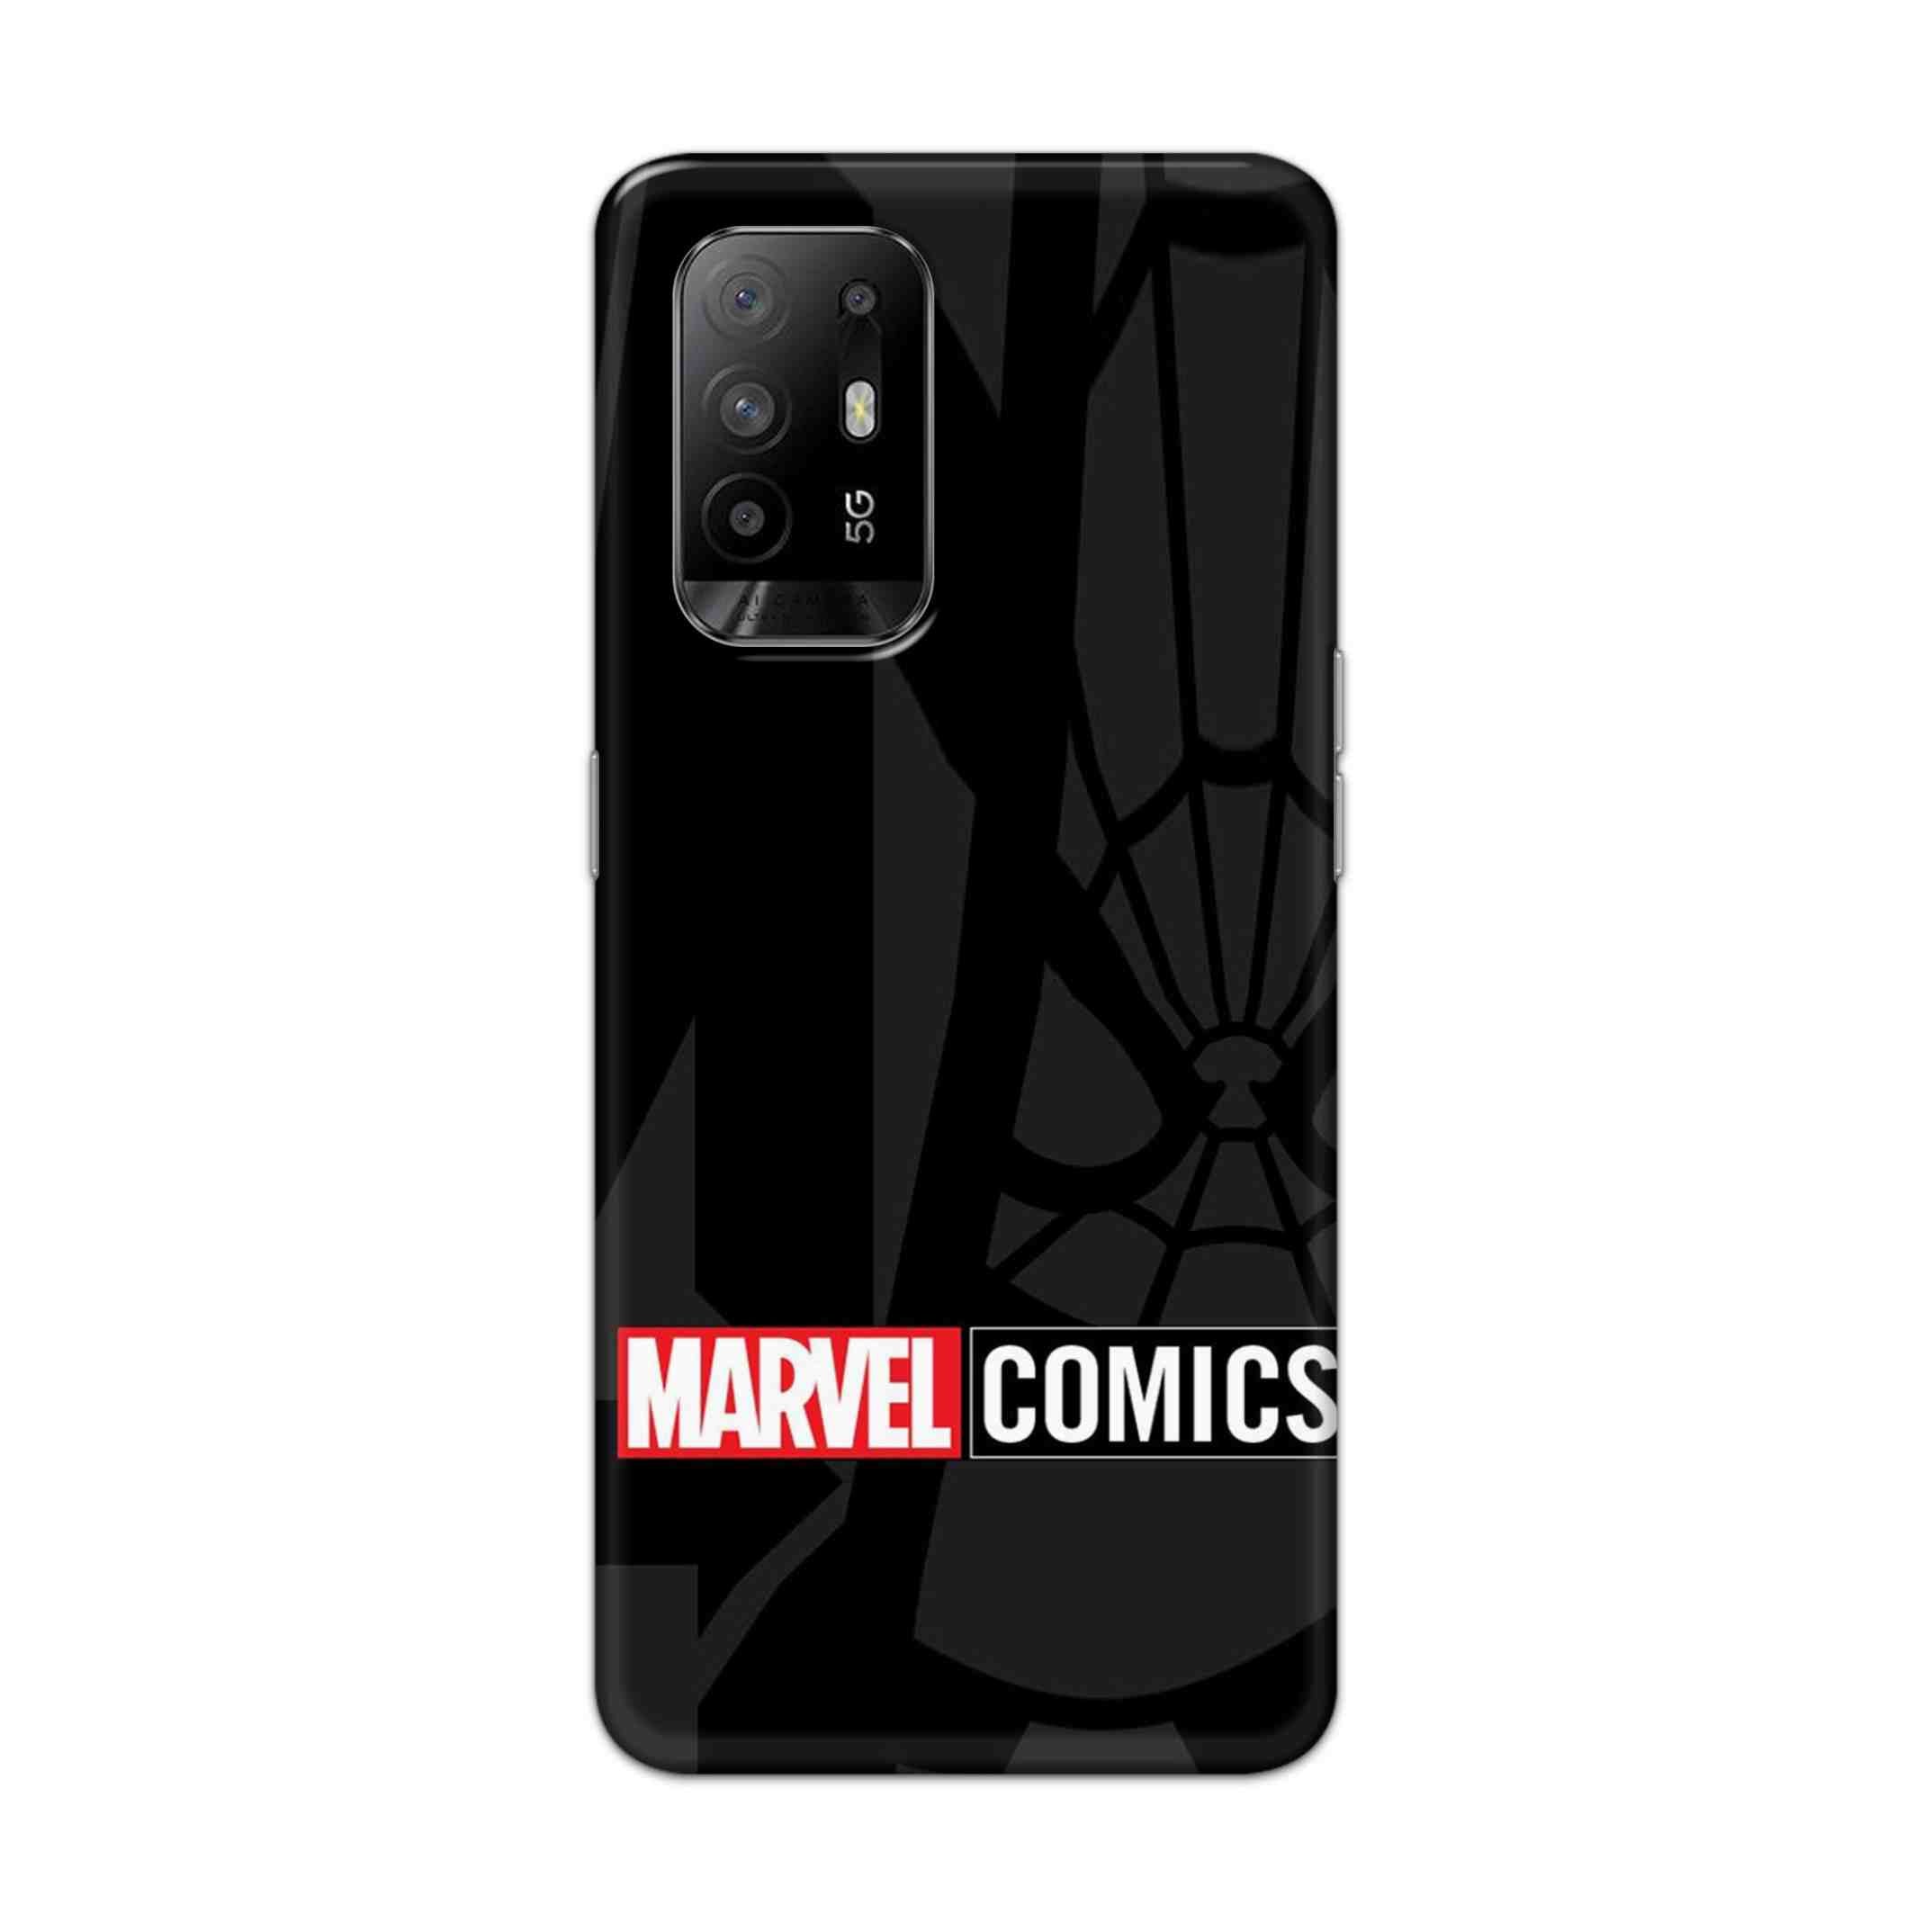 Buy Marvel Comics Hard Back Mobile Phone Case Cover For Oppo F19 Pro Plus Online